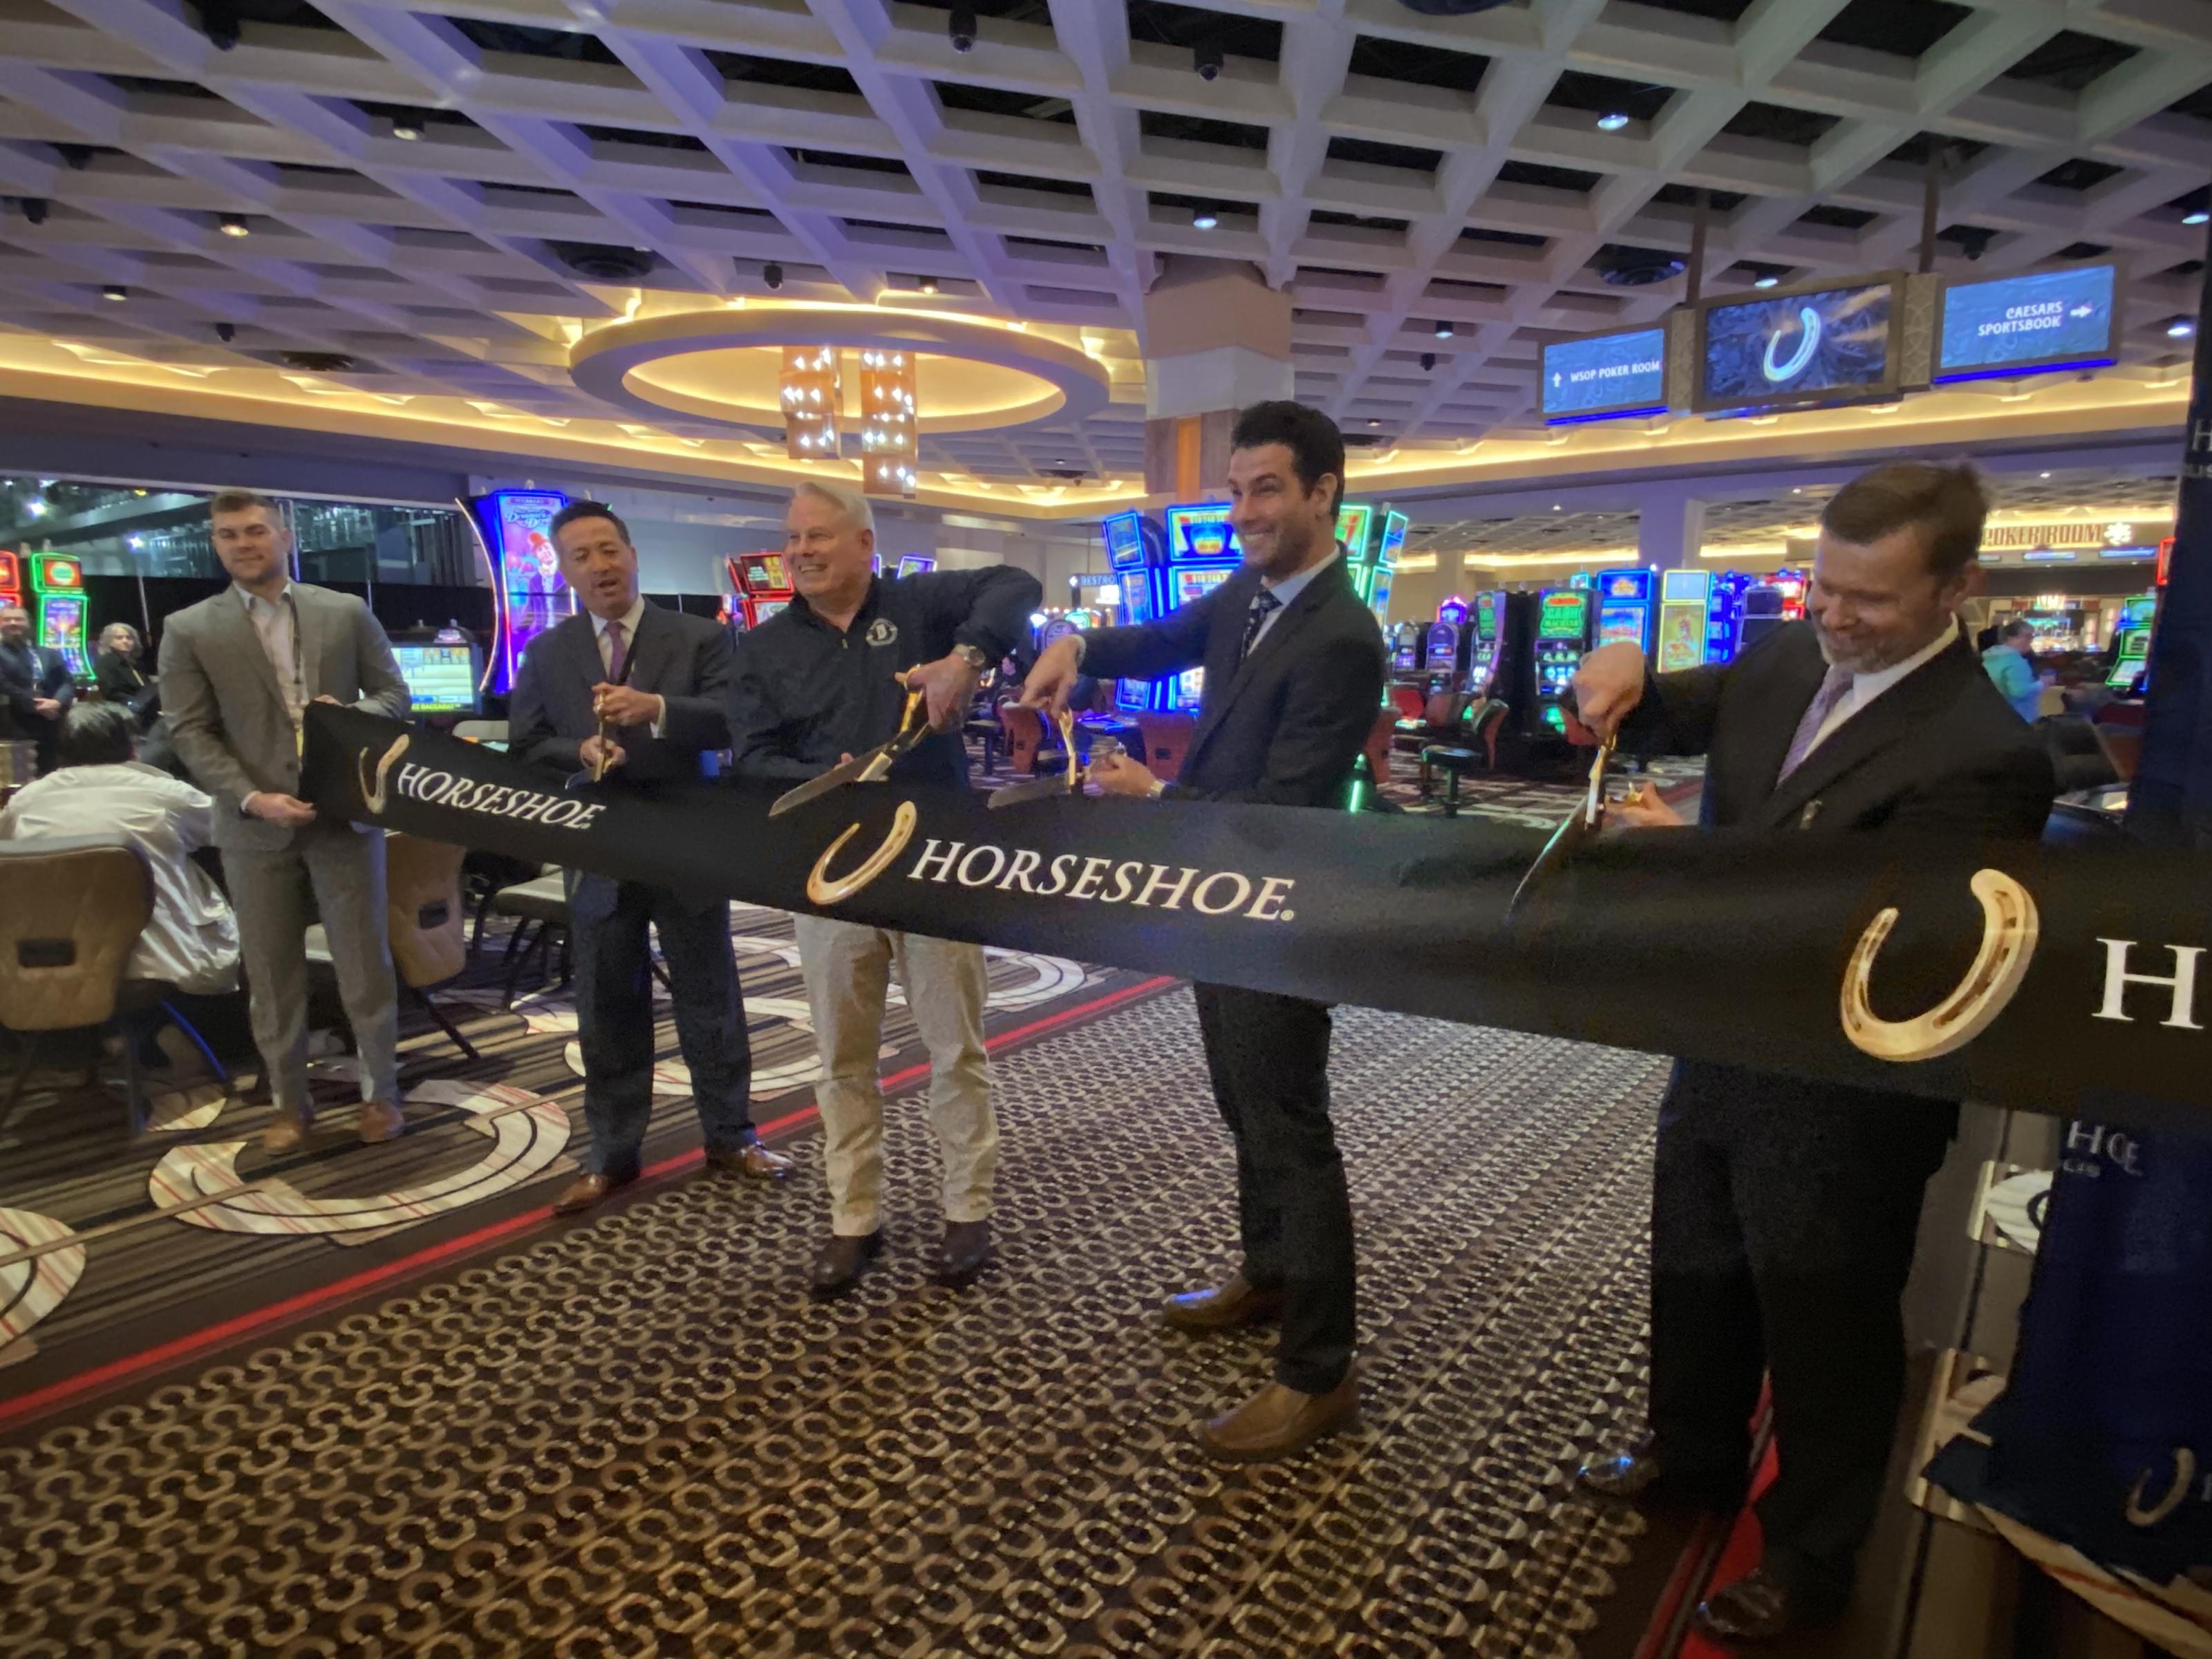 Horseshoe Indianapolis Racing & Casino celebrates latest expansion